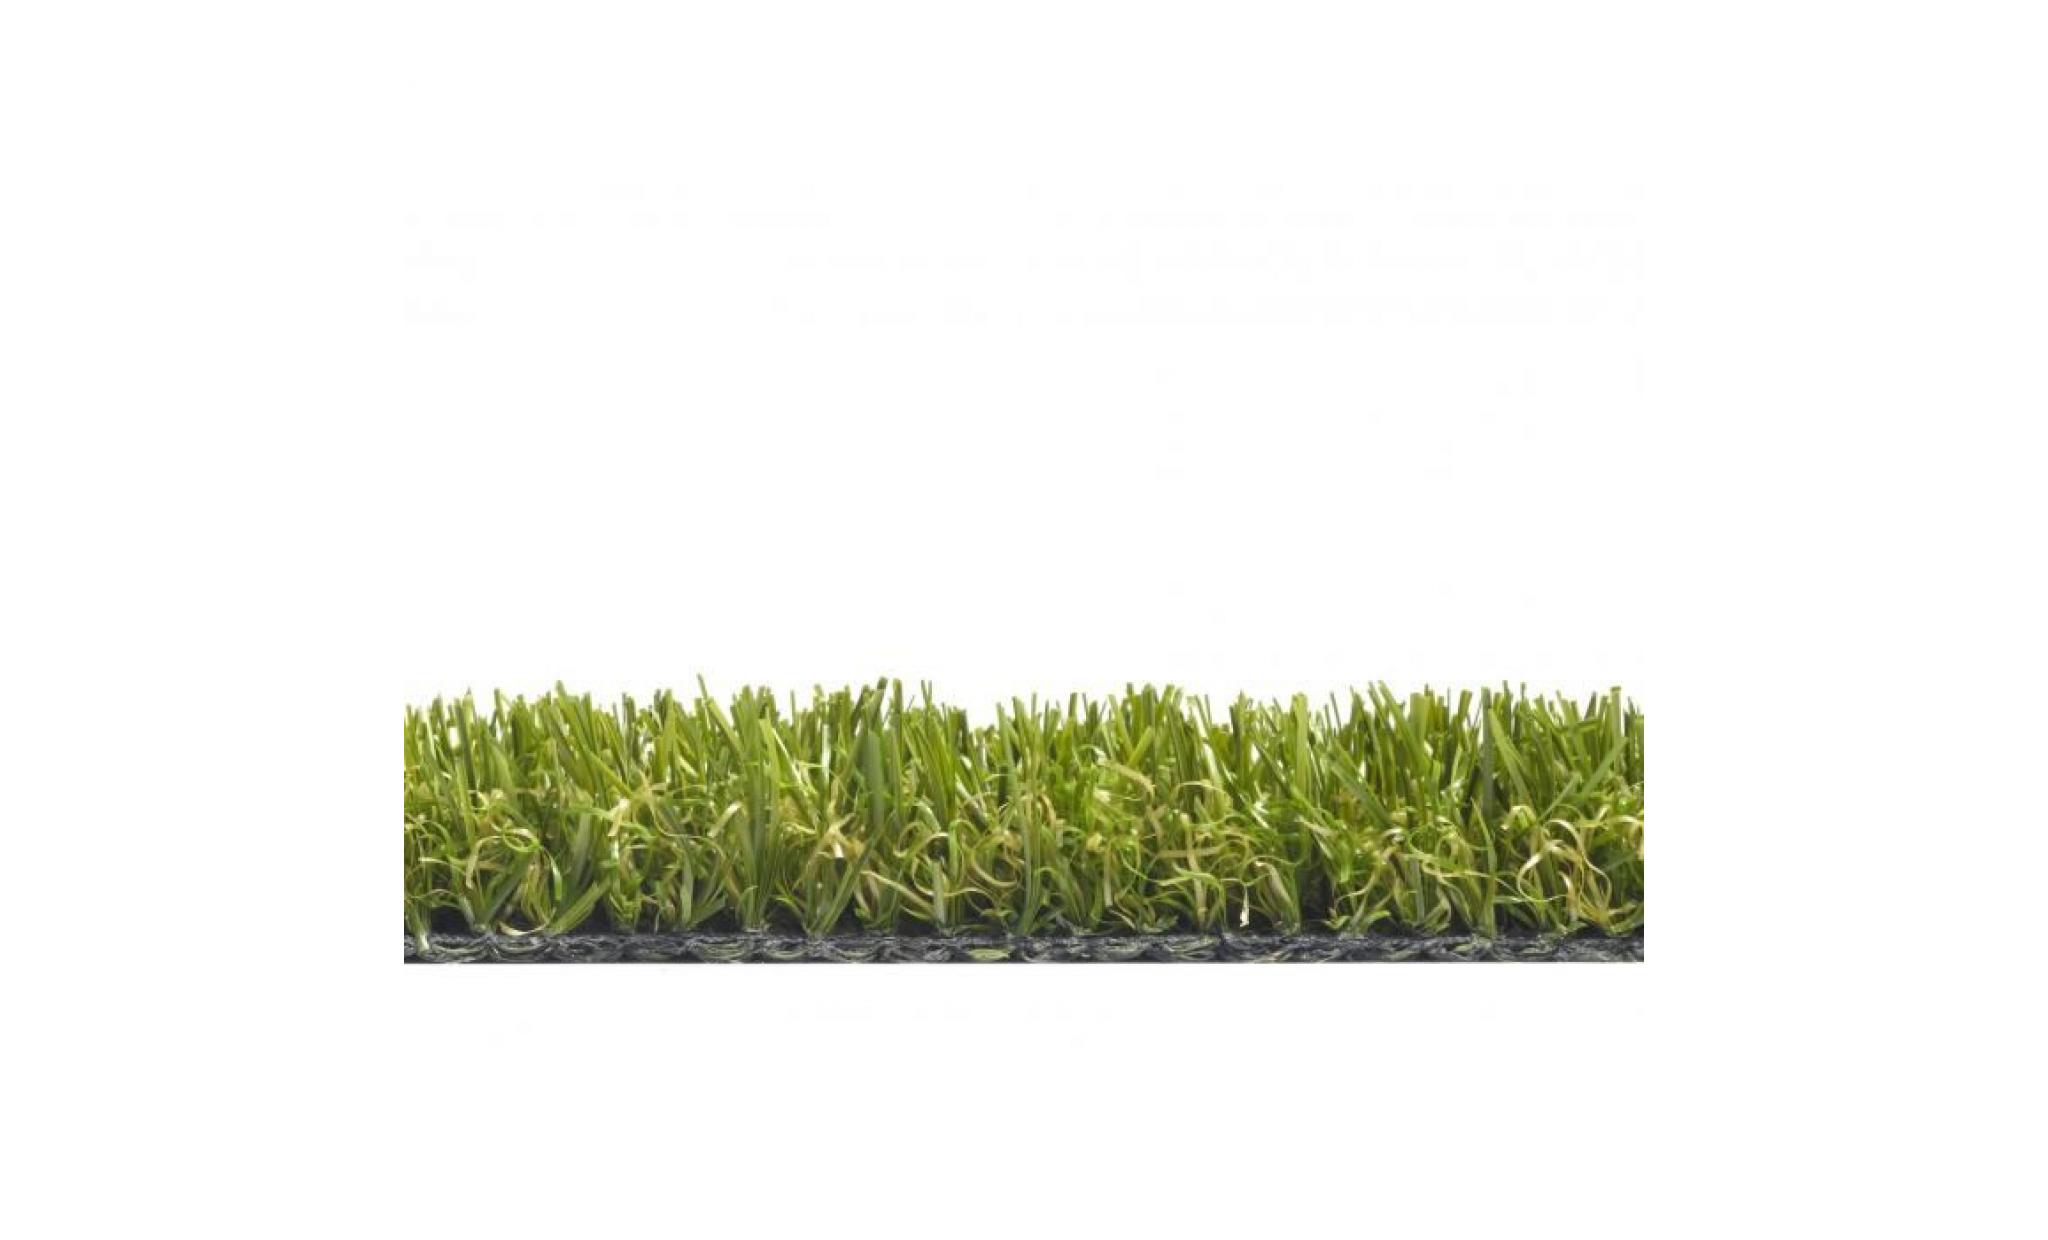 chelsea   tapis type luxe gazon artificiel – pour jardin, terrasse, balcon   vert  [400x100 cm] pas cher